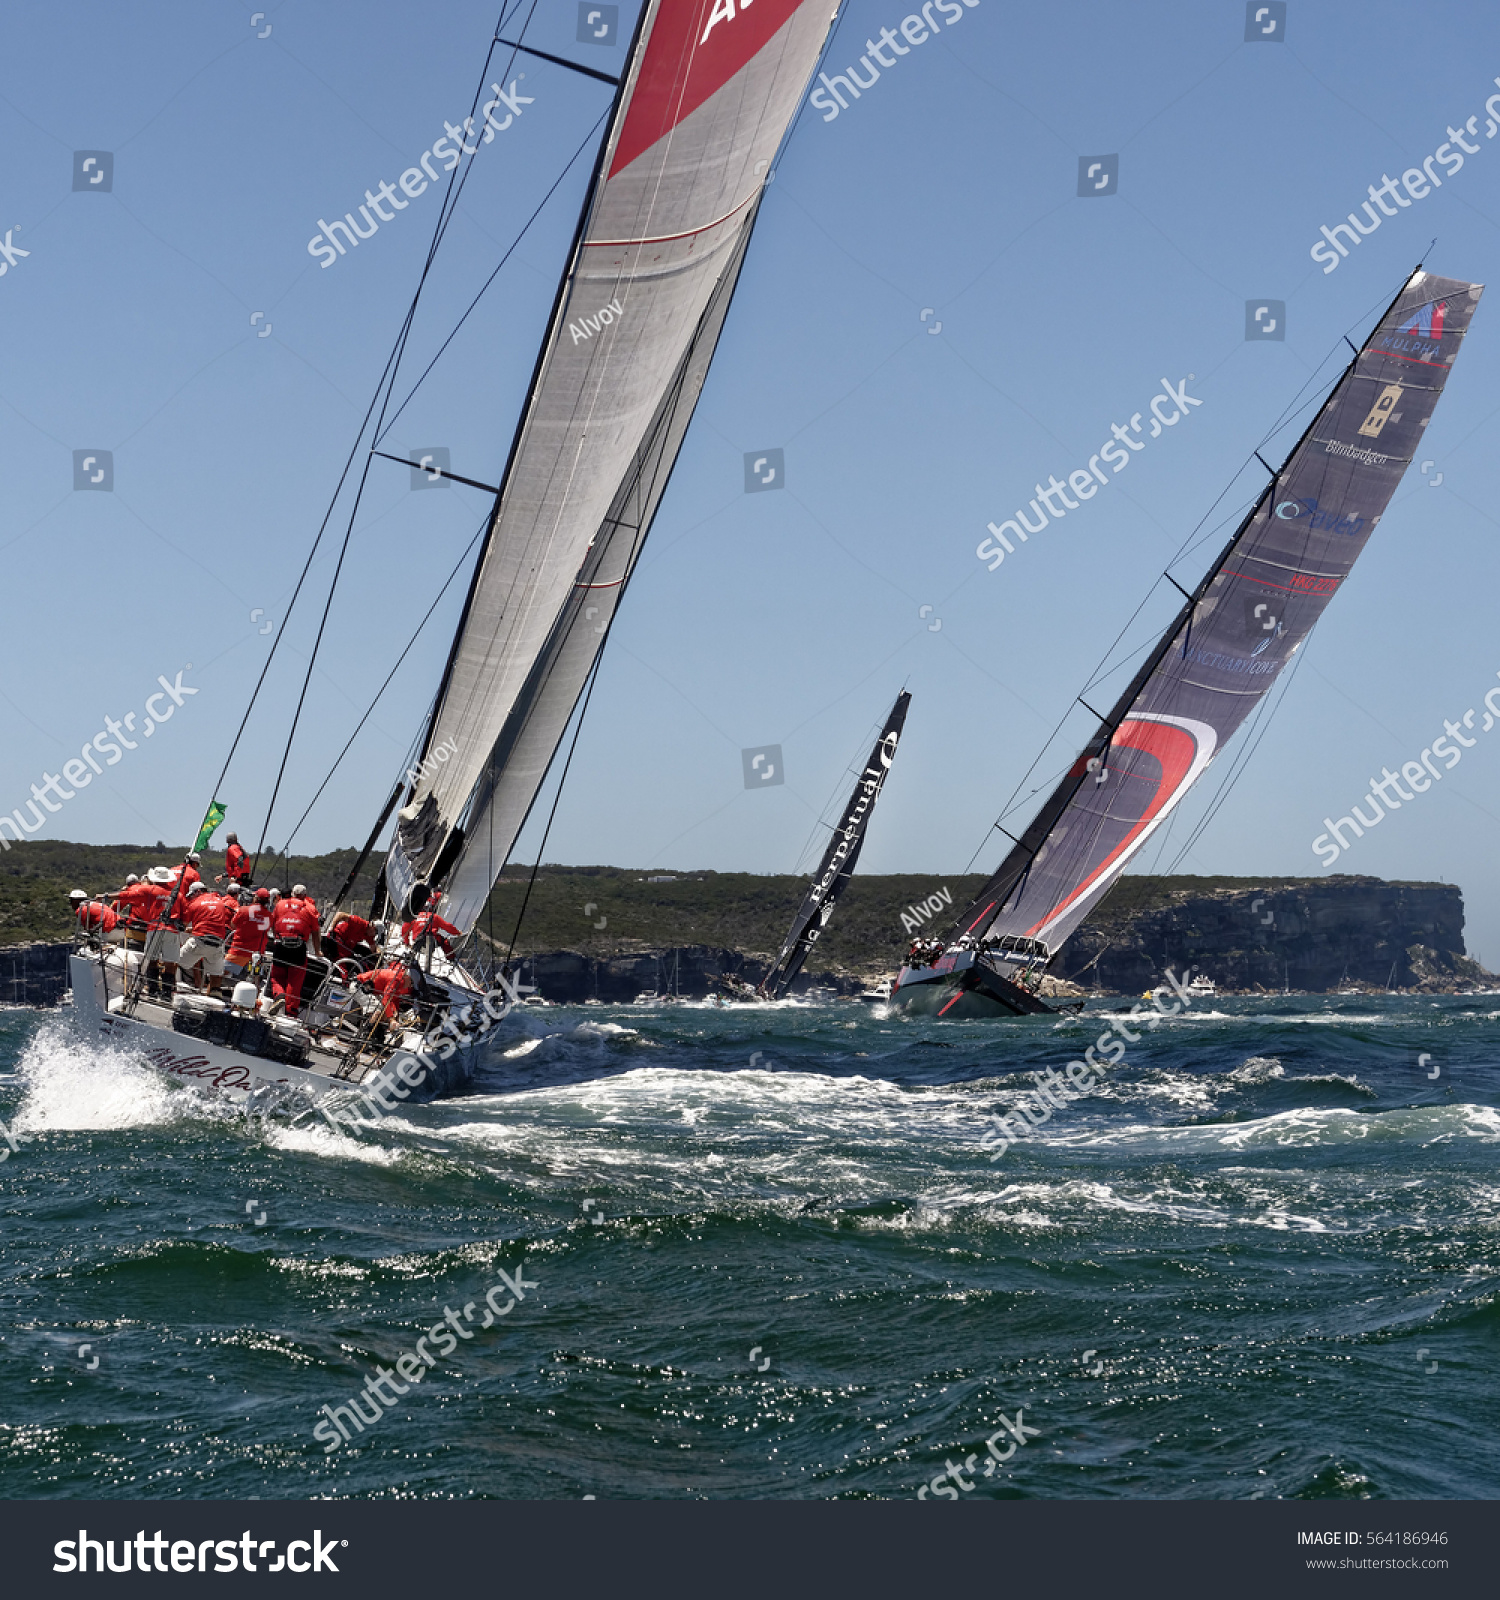 sydney to hobart 2016 sailing instructions